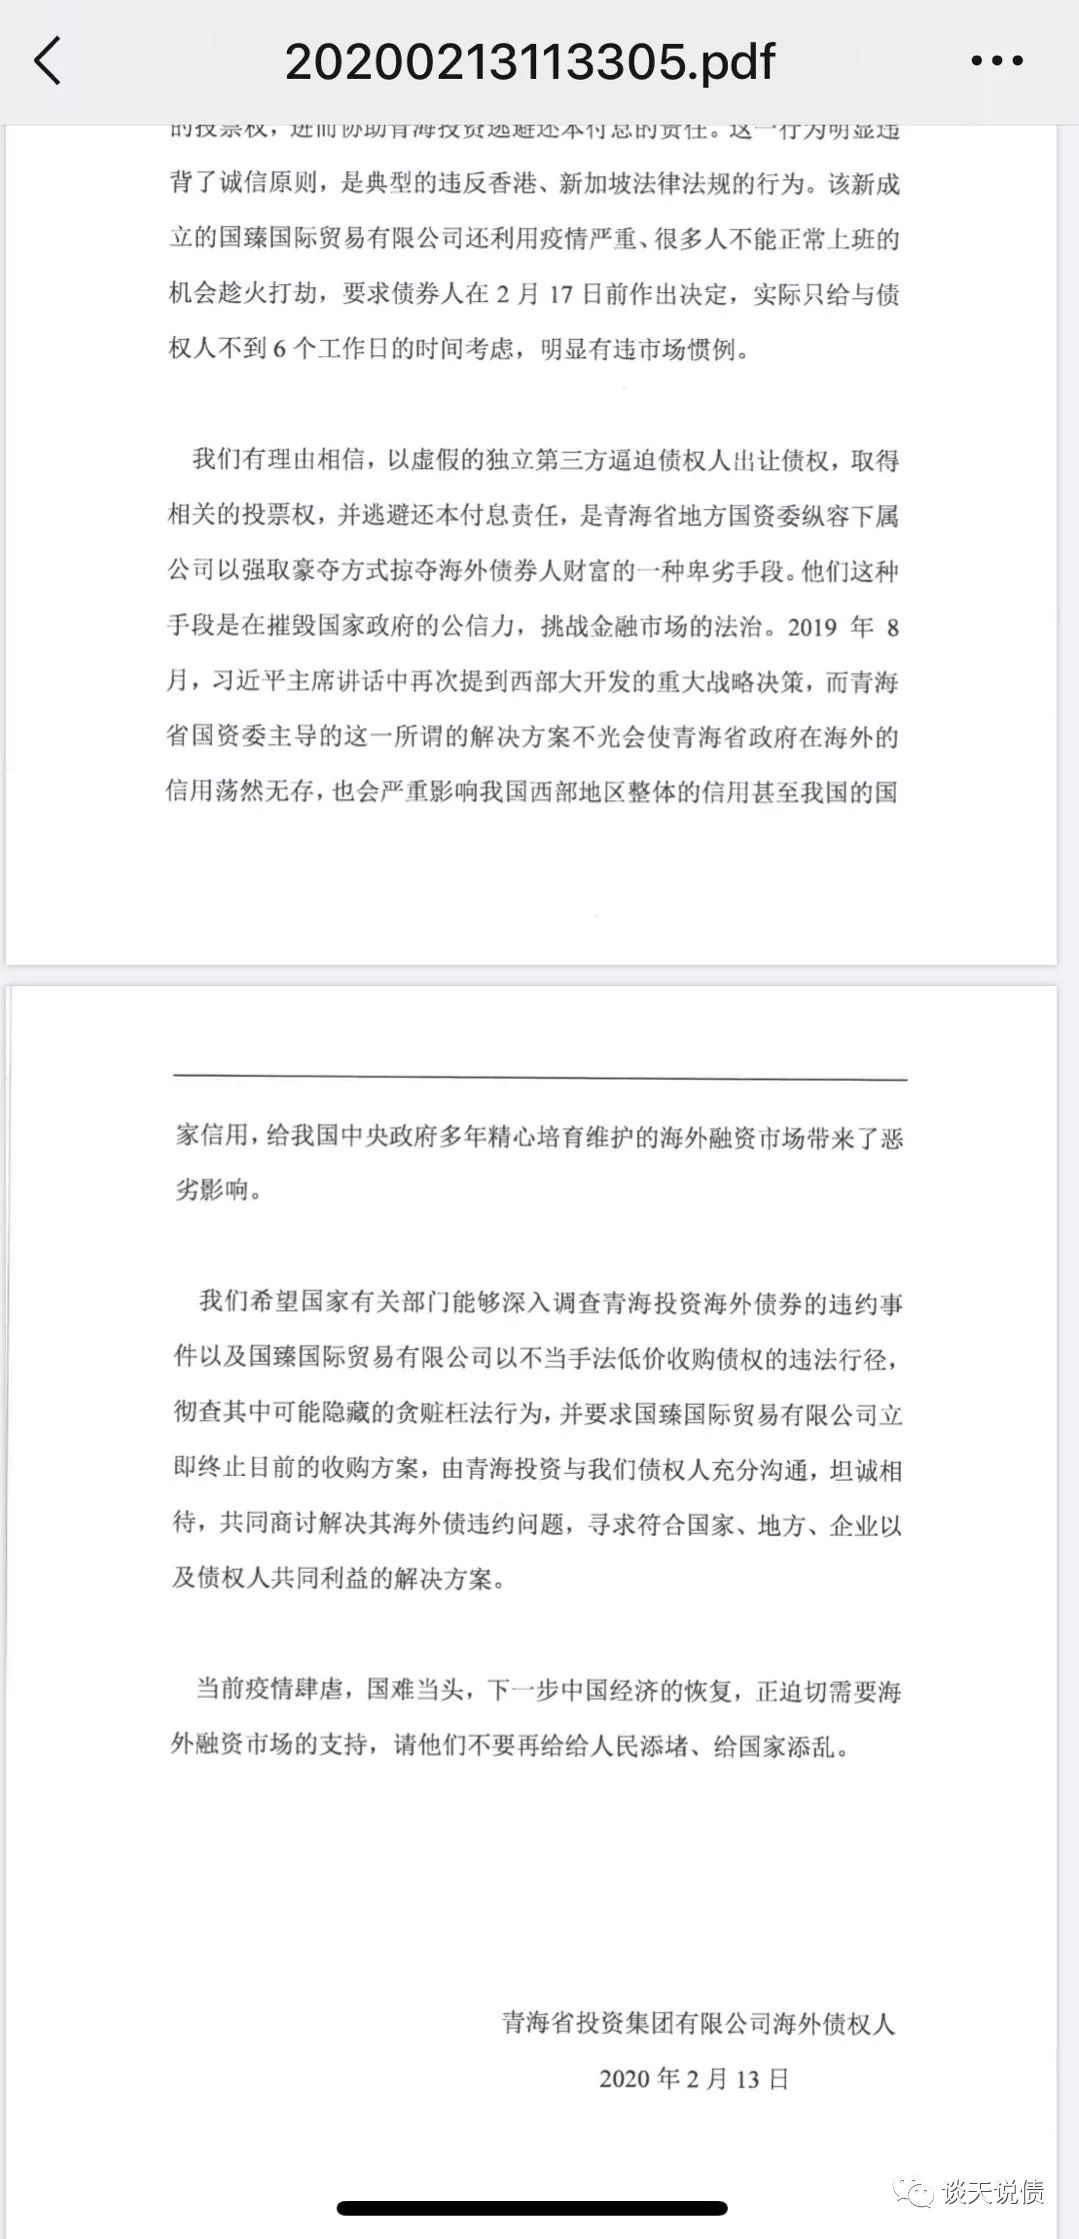 想不到境外投资人也开始写信 青海省平台再被声讨 